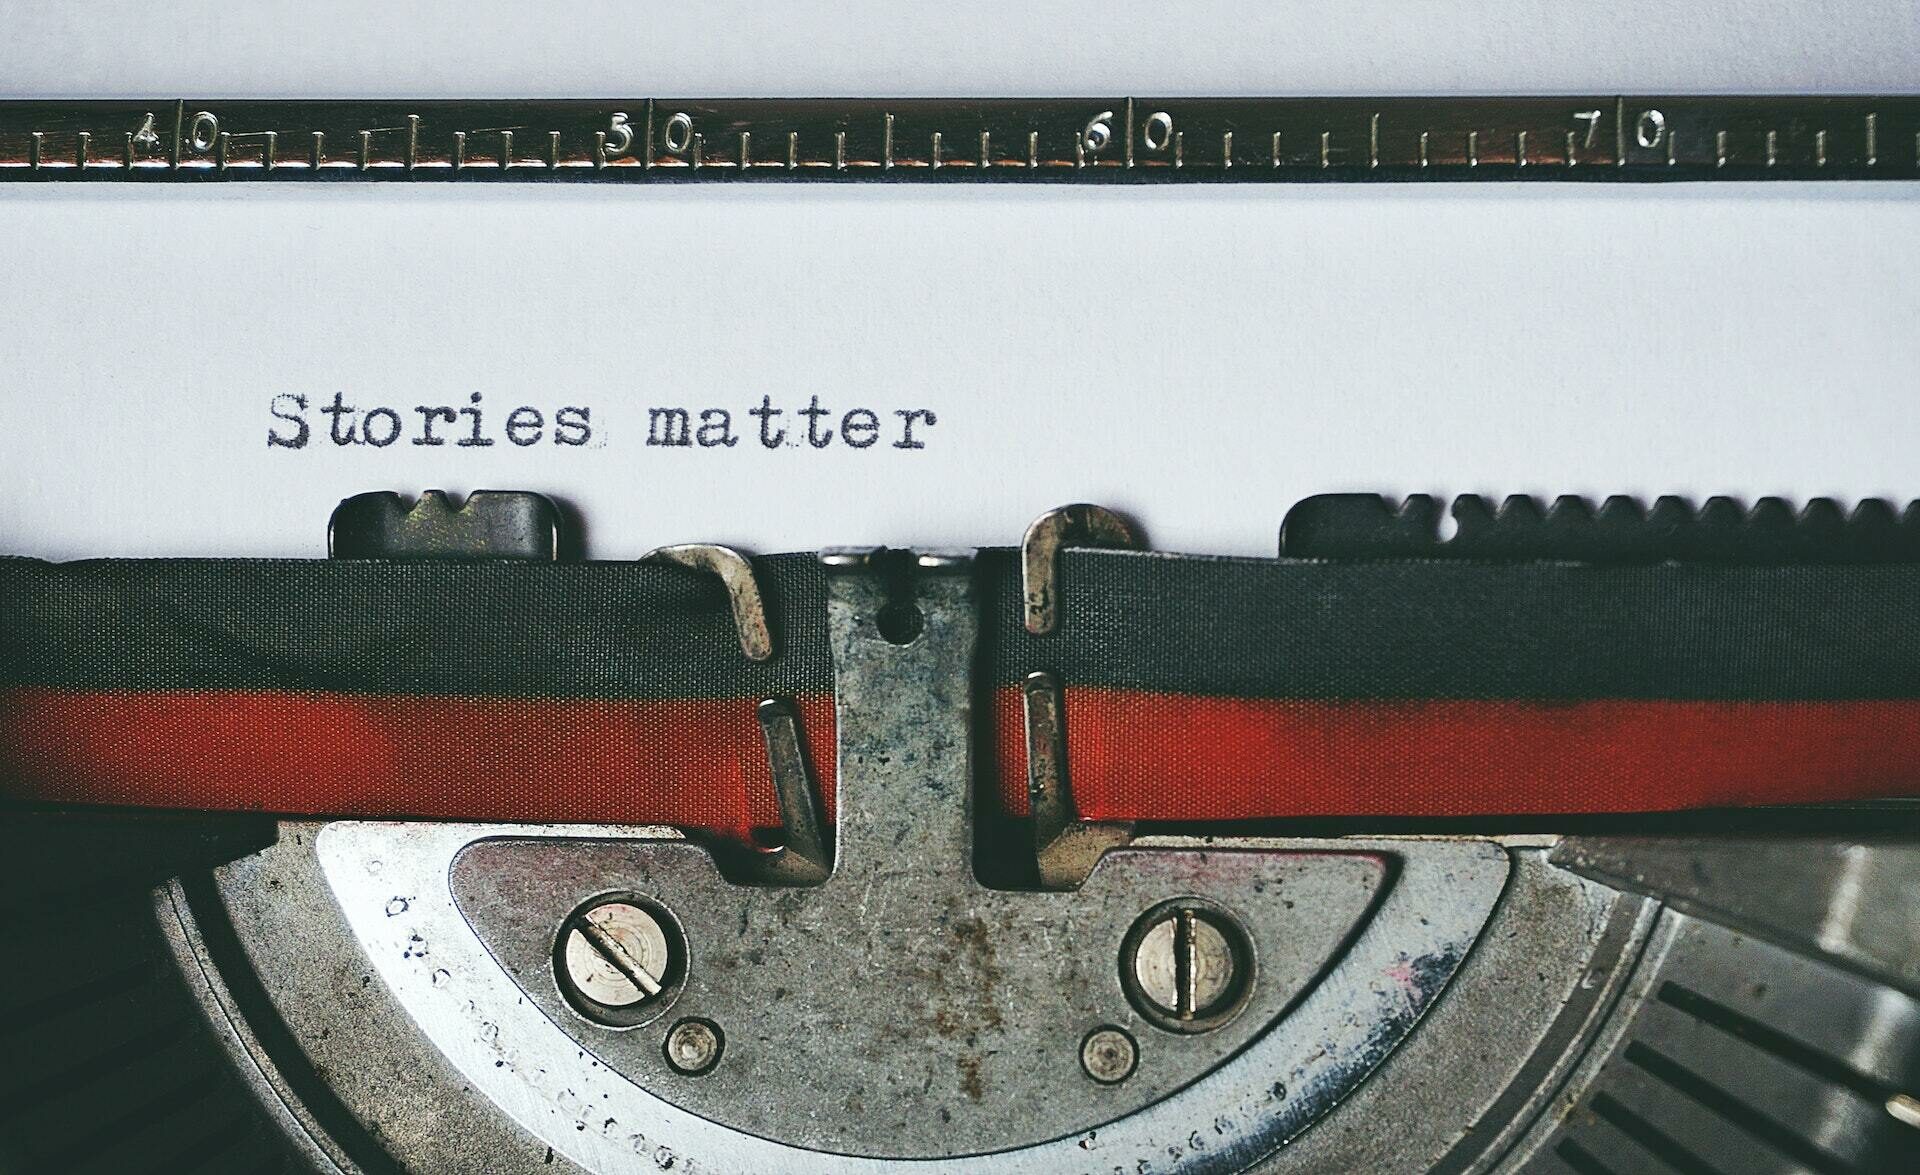 Schreibmaschine mit den Worten "Stories matter" auf einem Blatt